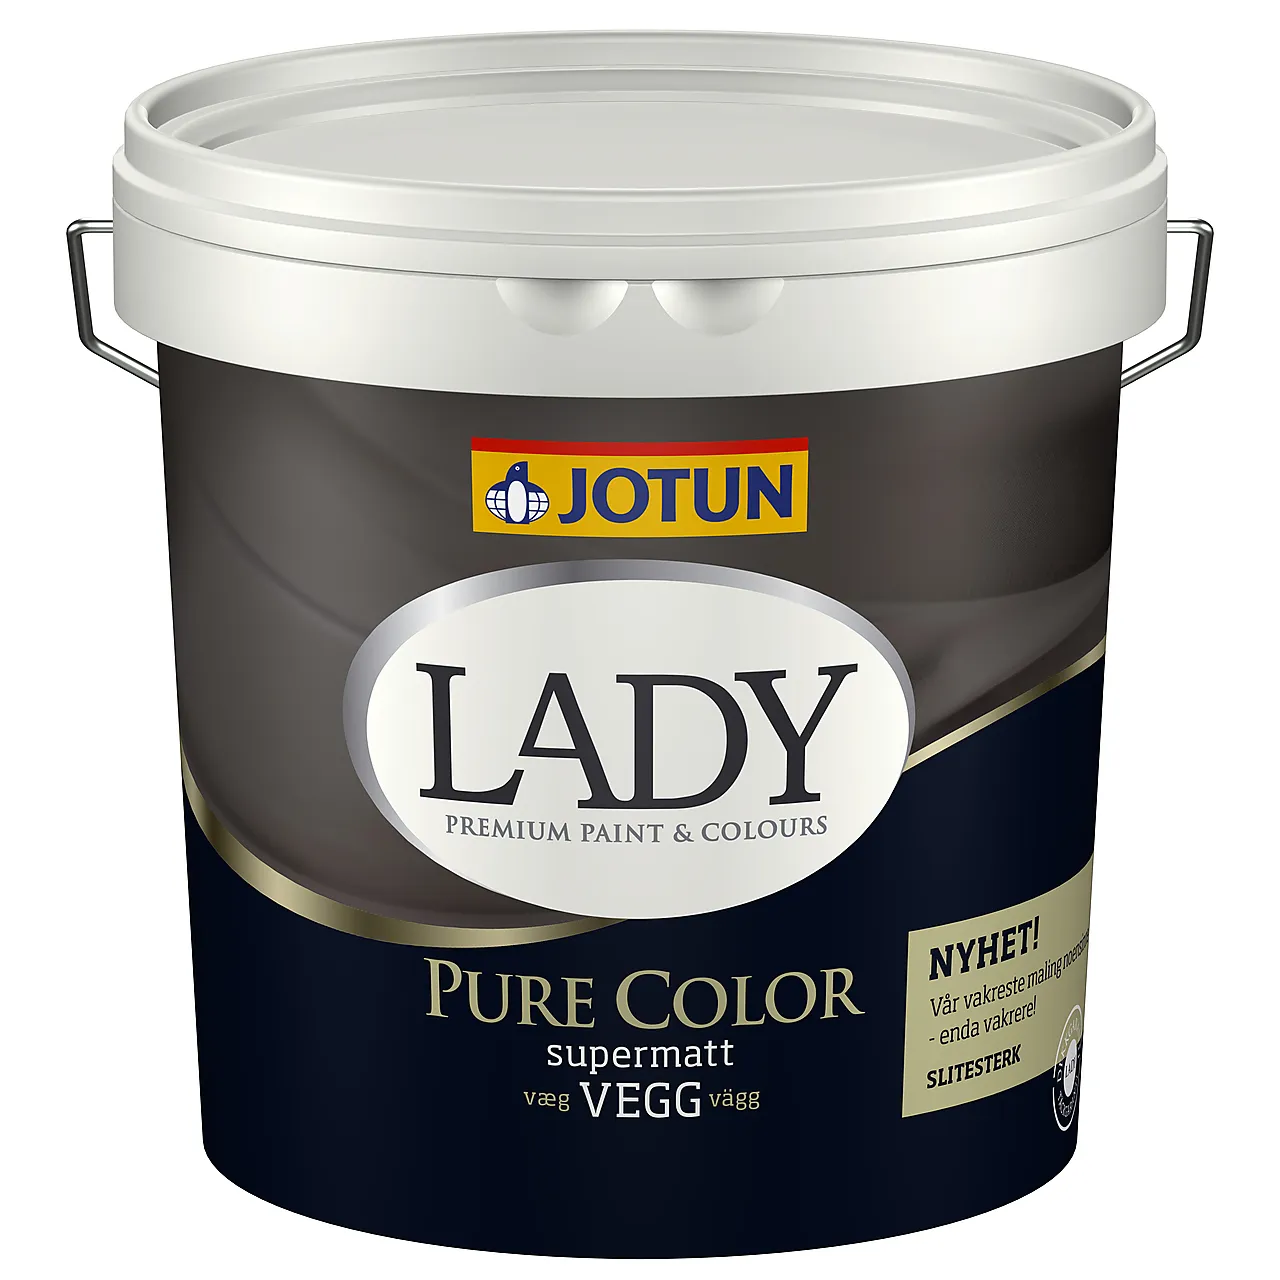 Lady pure color c-base 2,7 liter